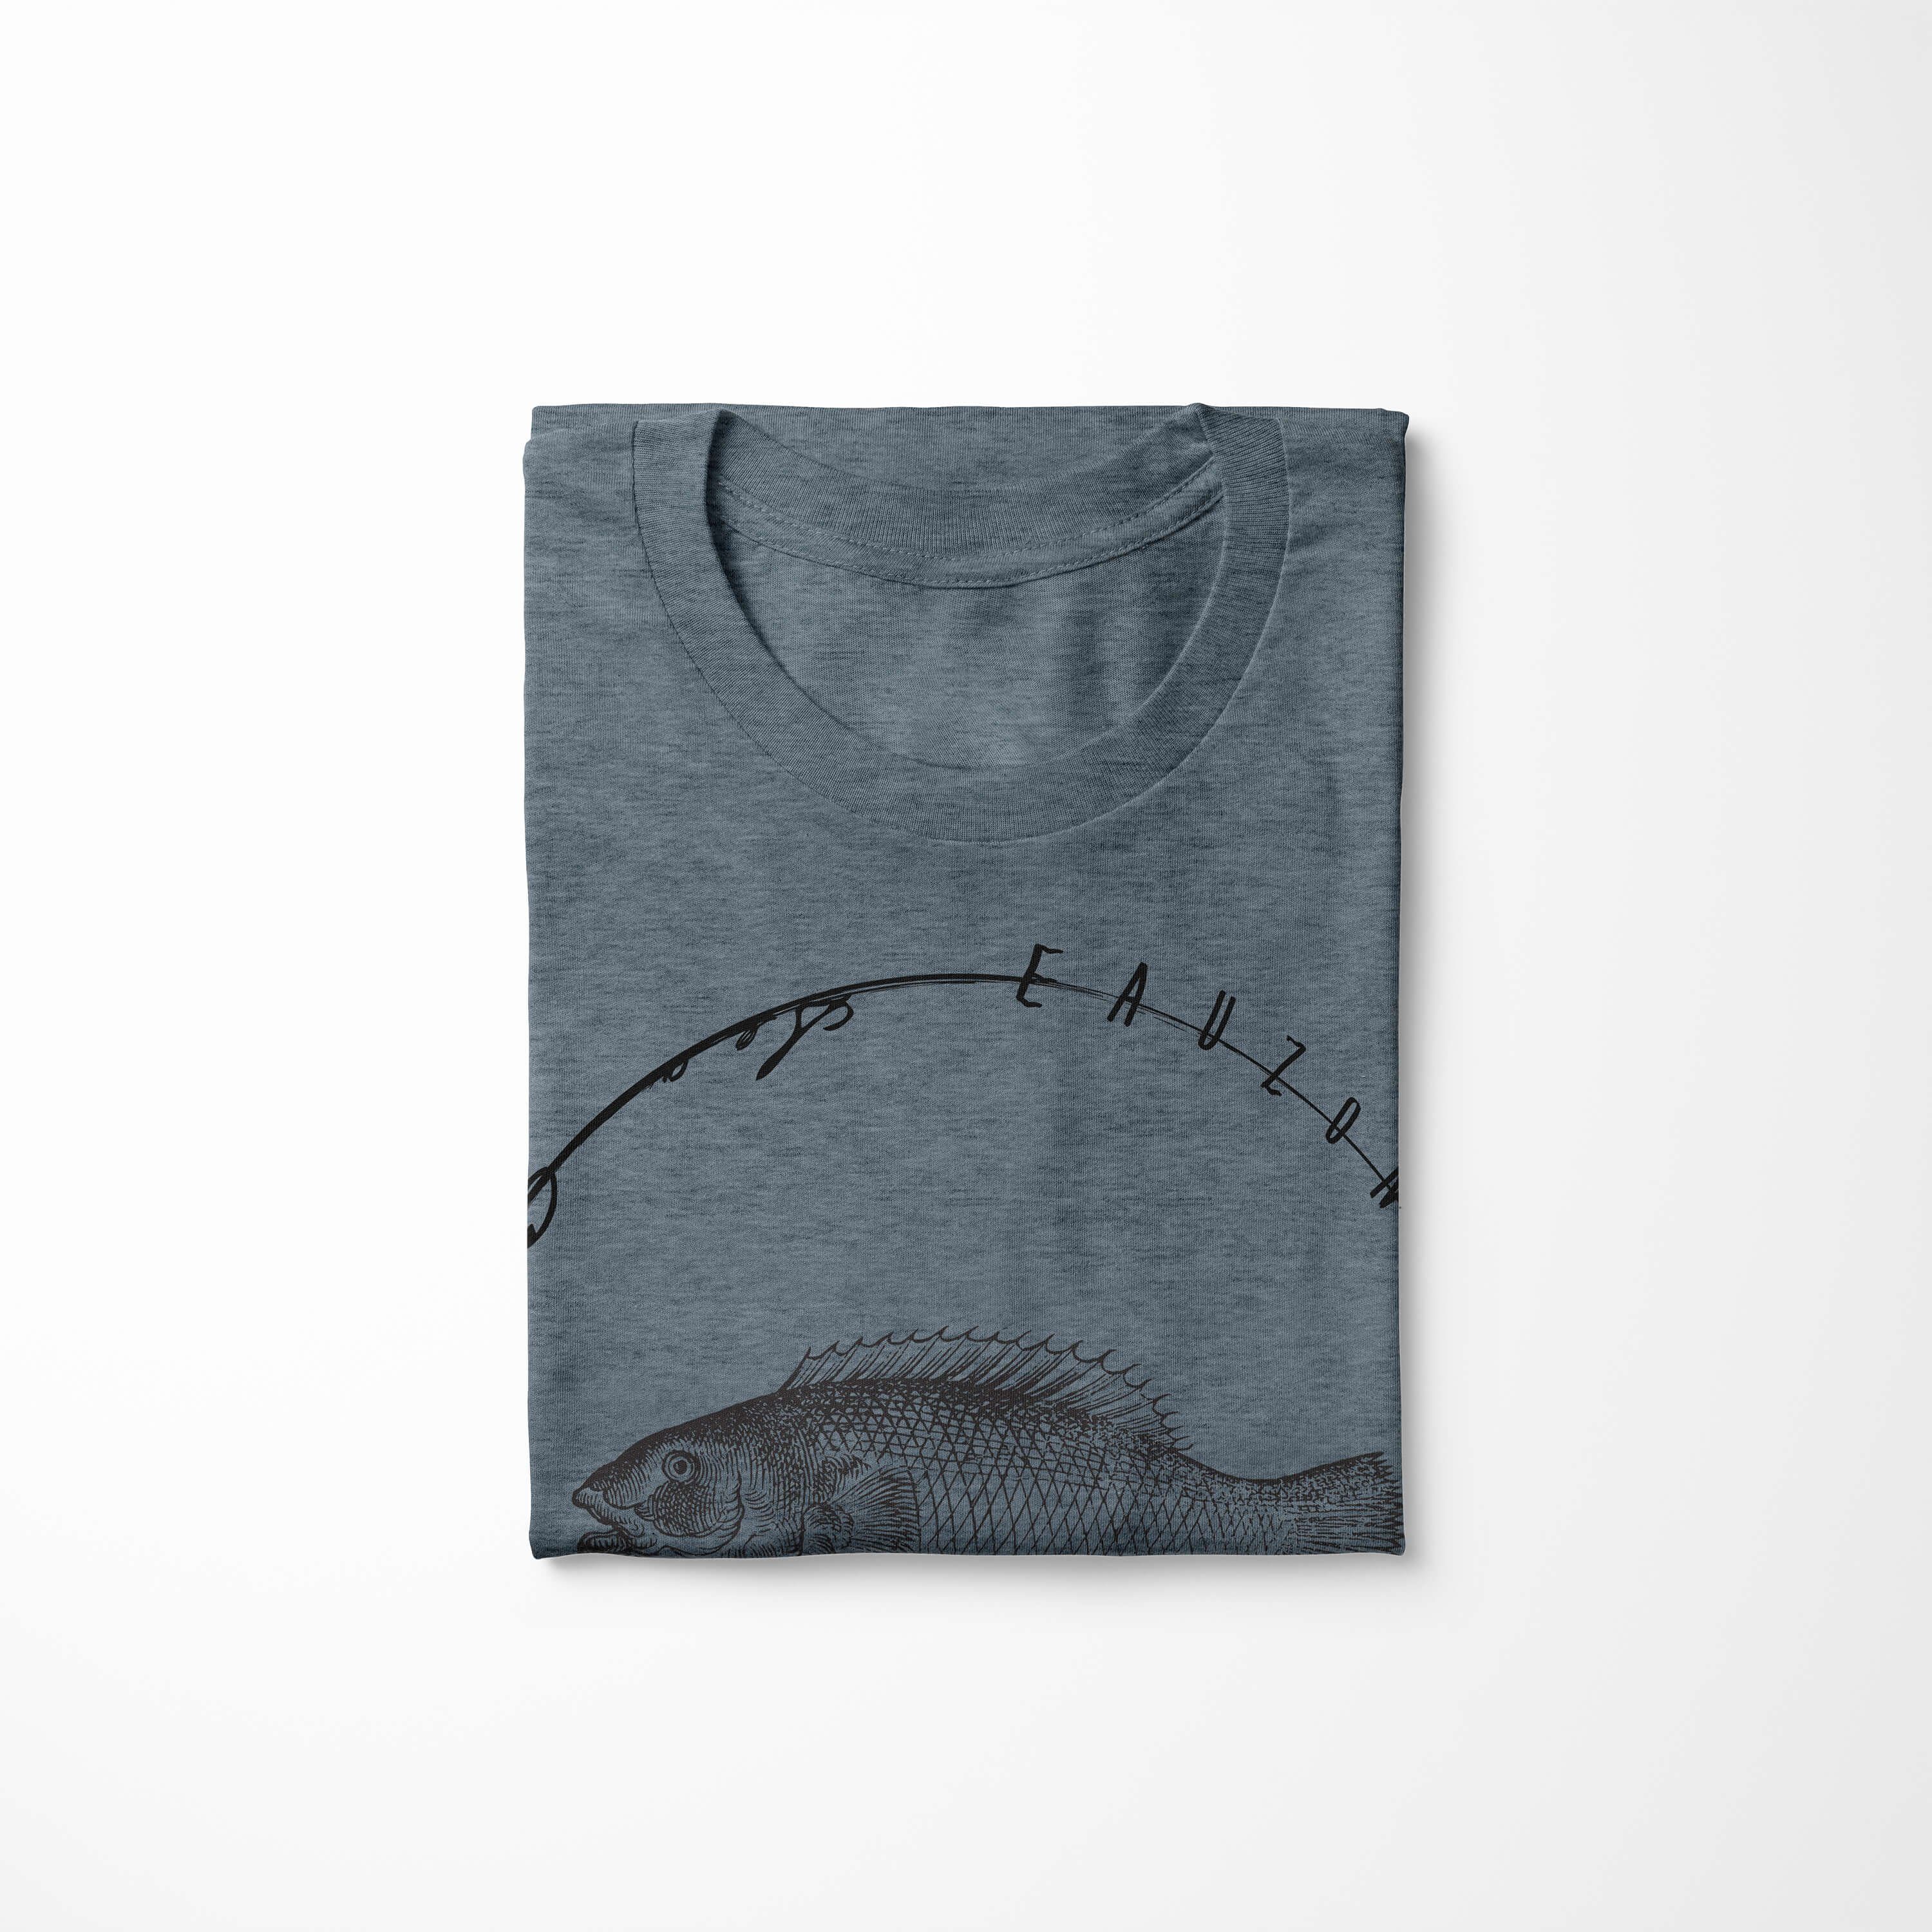 Sinus Art sportlicher Fische und Schnitt Struktur Sea 041 Indigo - T-Shirt Serie: T-Shirt Tiefsee / feine Sea Creatures